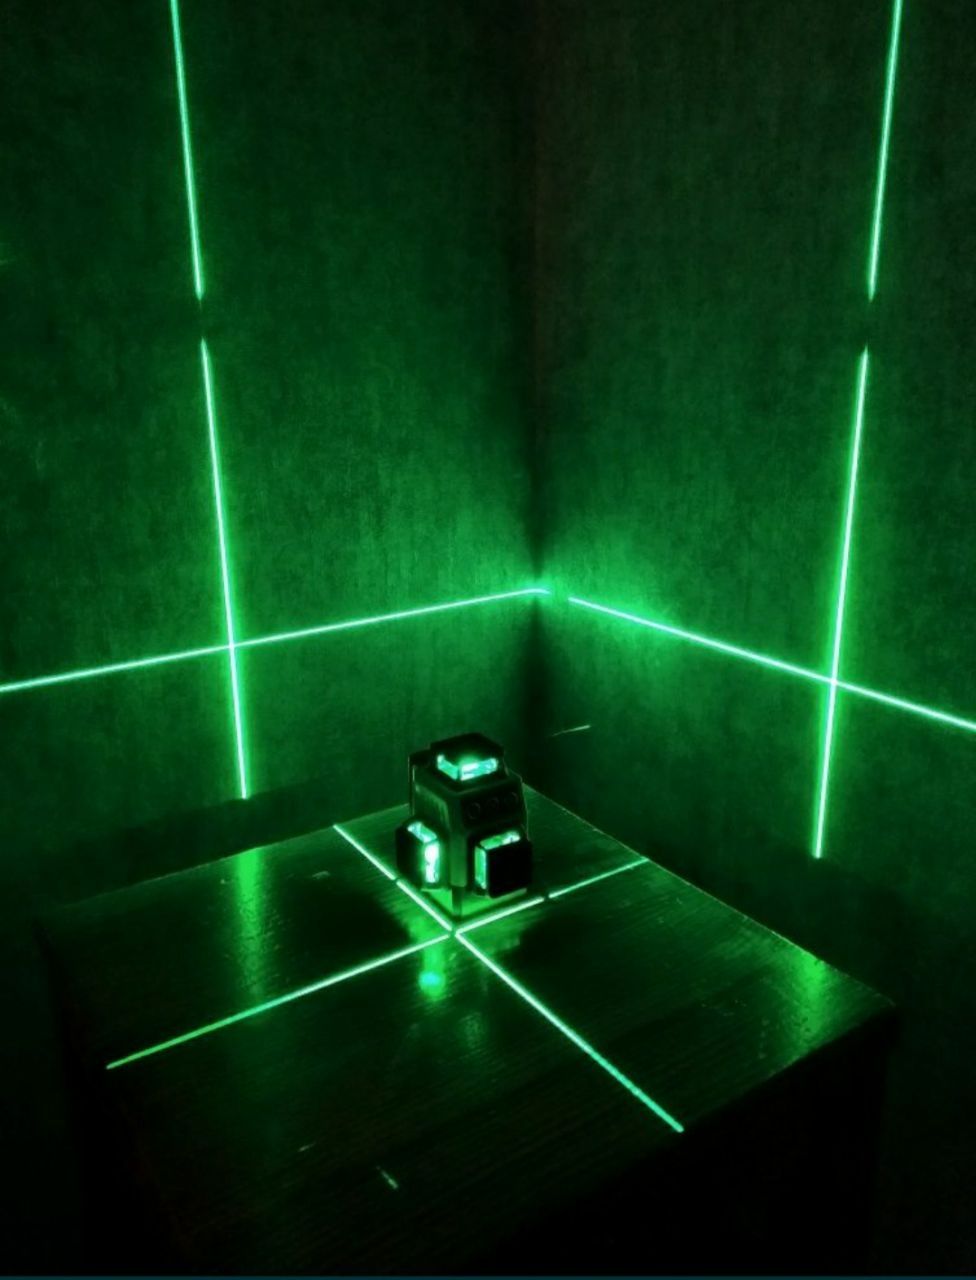 Poziomica laserowa Hilda 12 linii 3D laserem krzyżowym 360